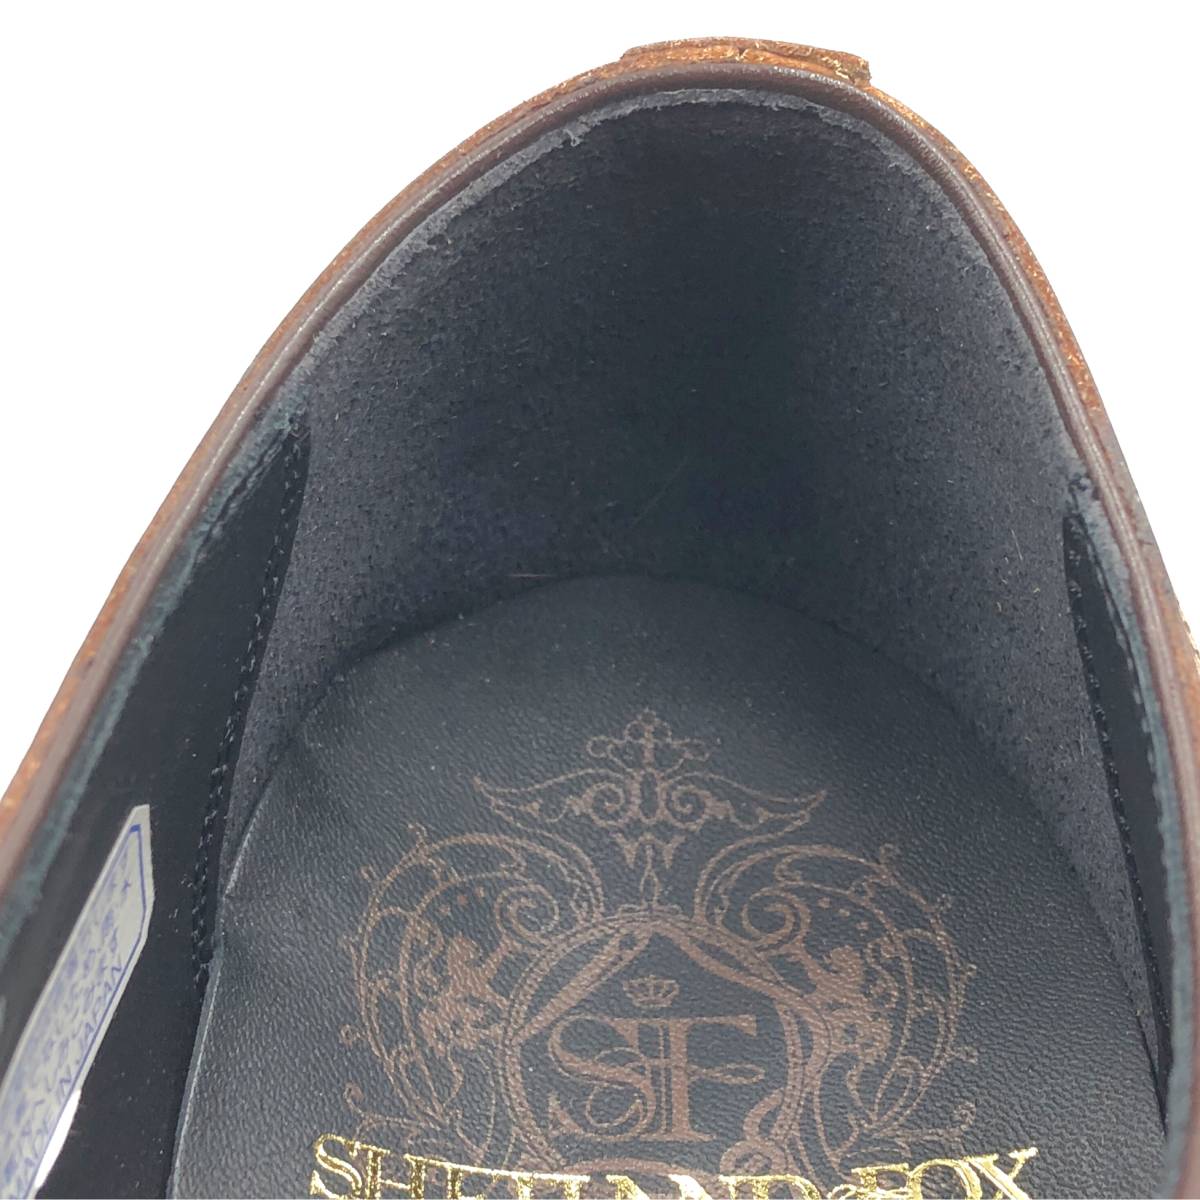 即決 未使用 SHETLANDFOX シェットランドフォックス 24.5cm 6.5 001F メンズ レザーシューズ プレーントゥ 茶 ブラウン 革靴 皮靴 ビジネス